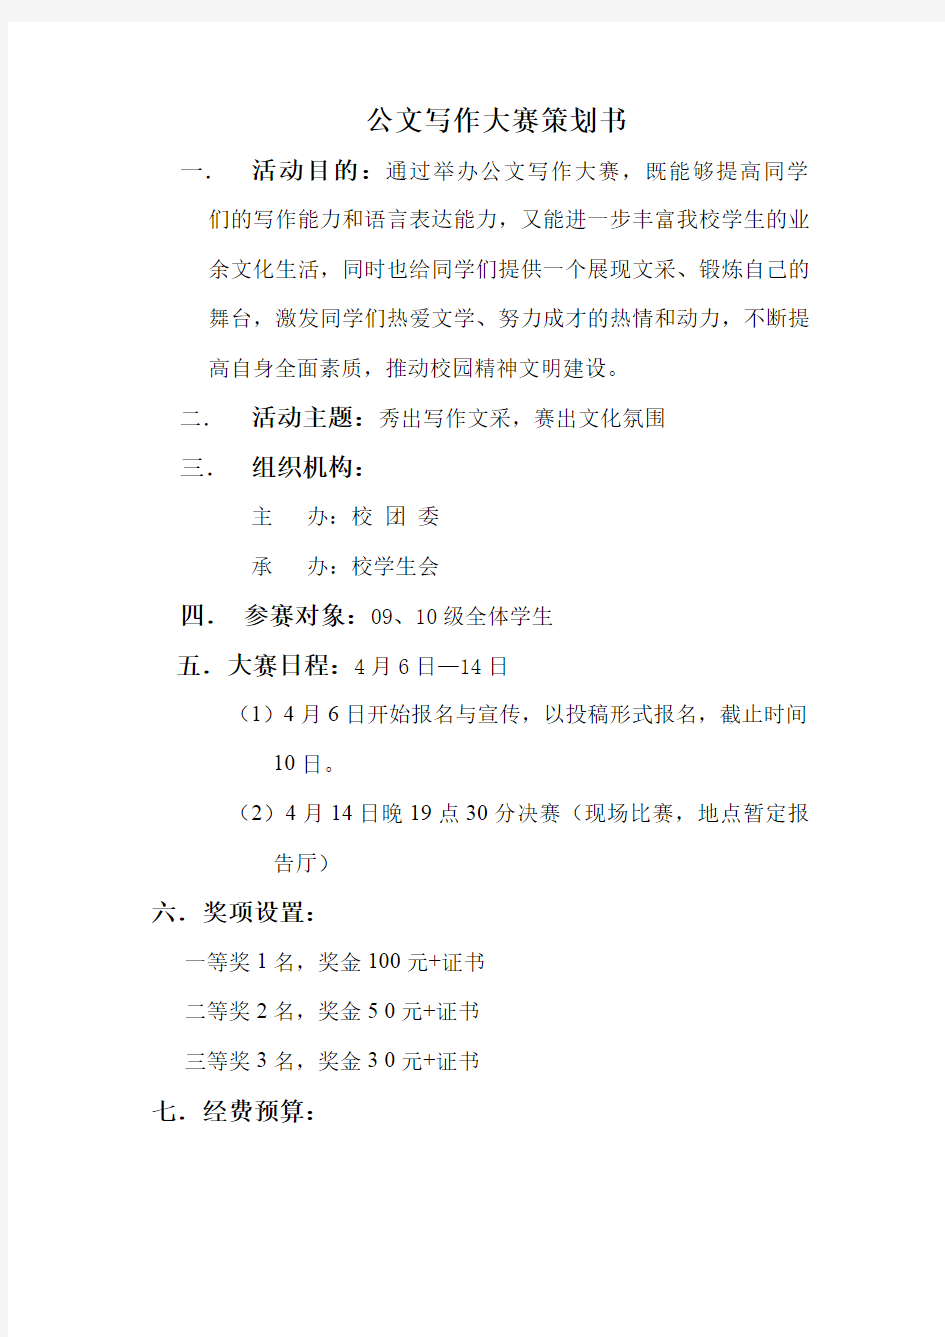 公文写作大赛策划书zhengshi